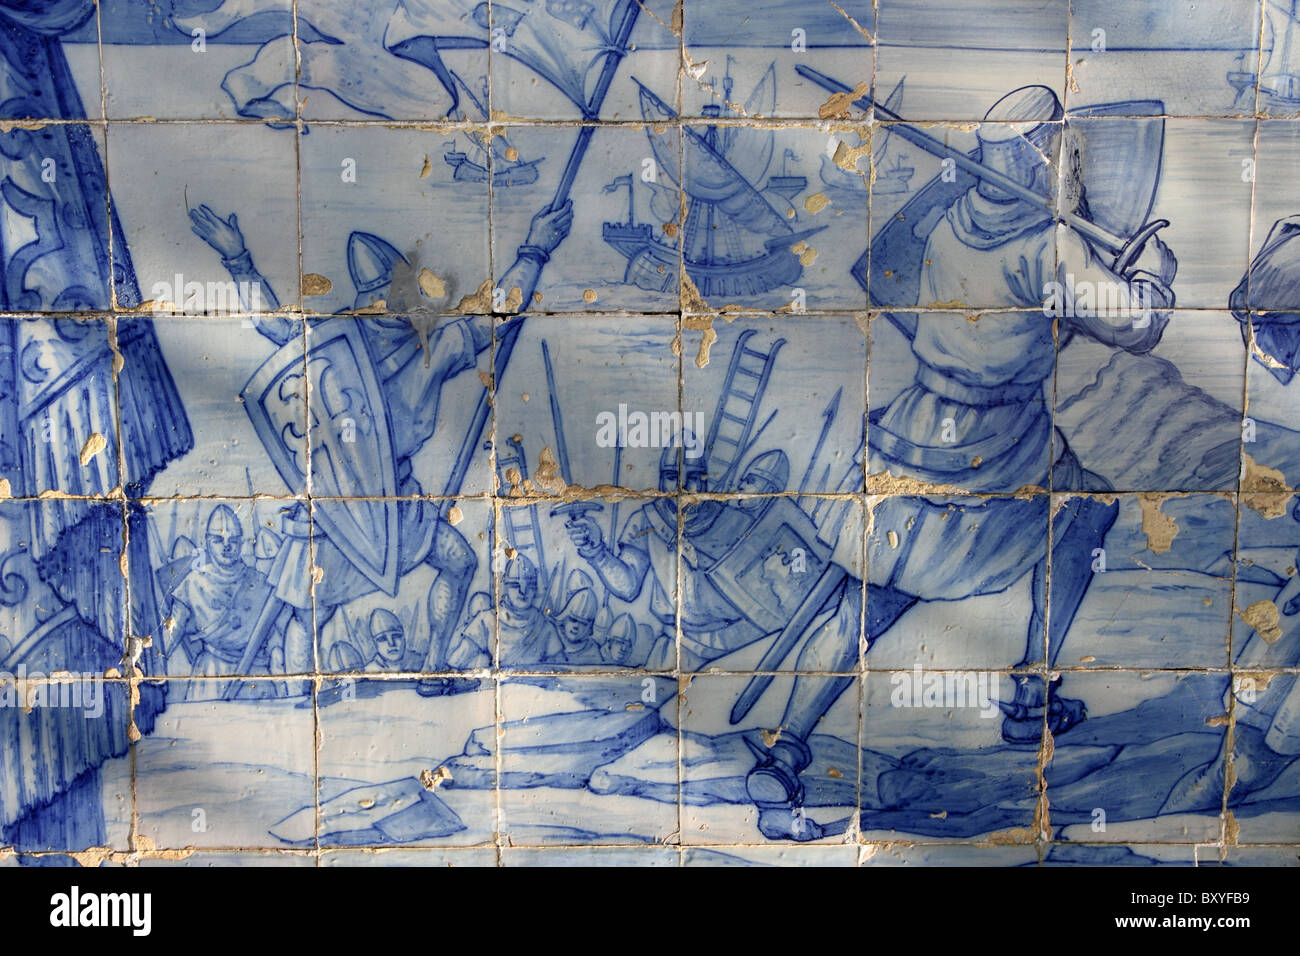 Fliesen-Panel zeigt christlichen Ritter Angriff auf das Castelo de Sao Jorge, Miradouro de Santa Luzia, Alfama, Lissabon, Portugal Stockfoto